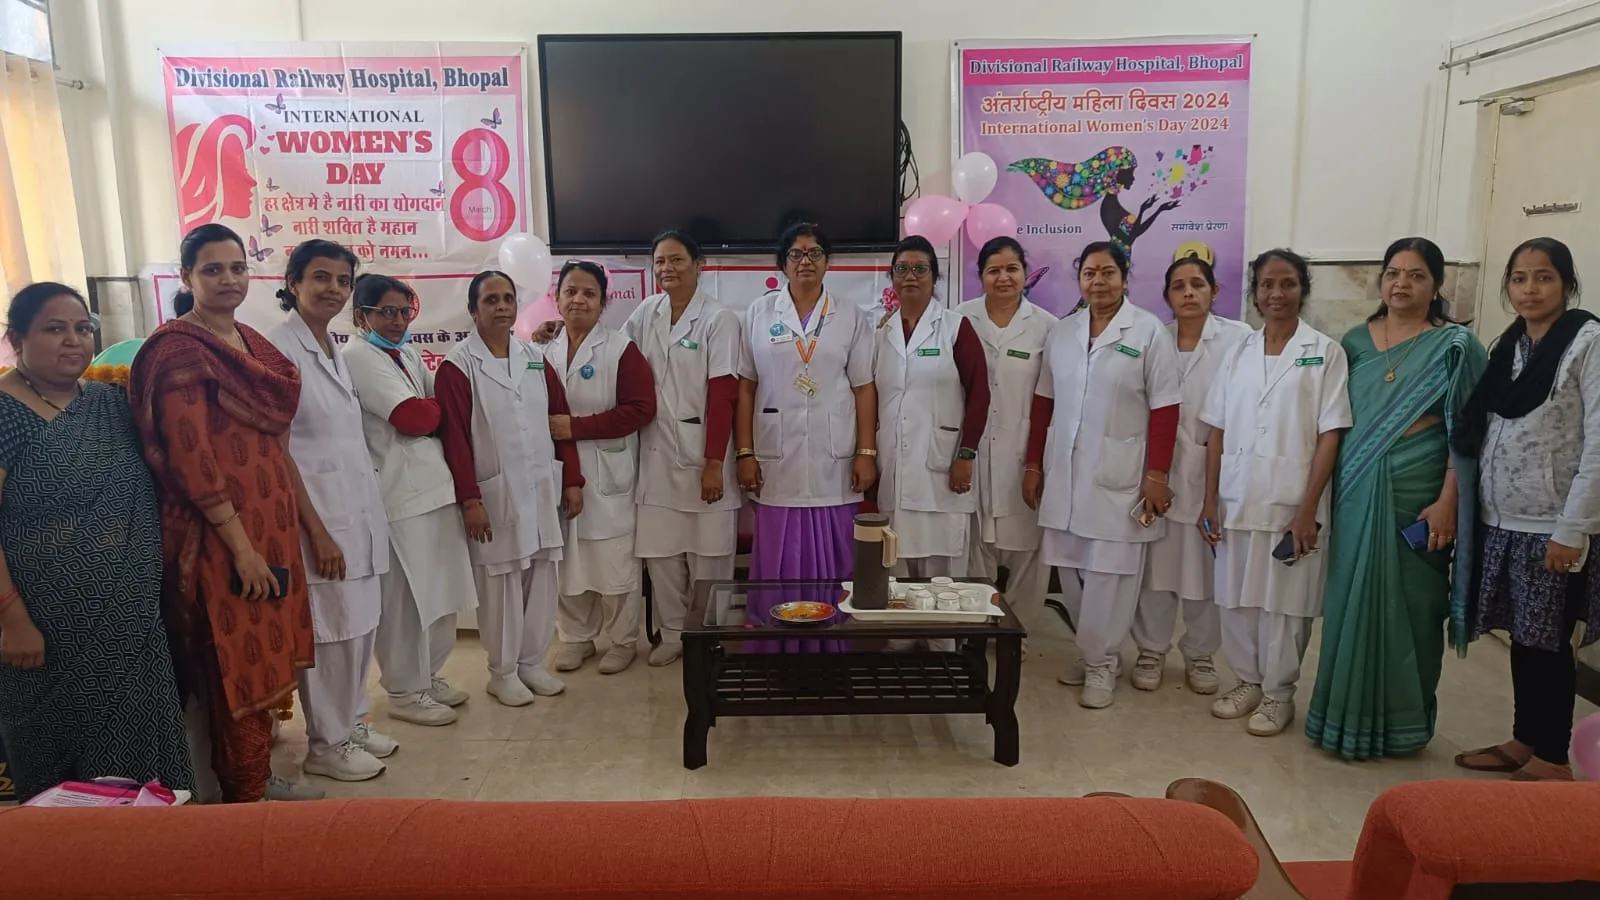 अंतर्राष्ट्रीय महिला दिवस के उपलक्ष्य में मंडल रेल चिकित्सालय में महिला सम्मान कार्यक्रम का किया गया आयोजन | New India Times